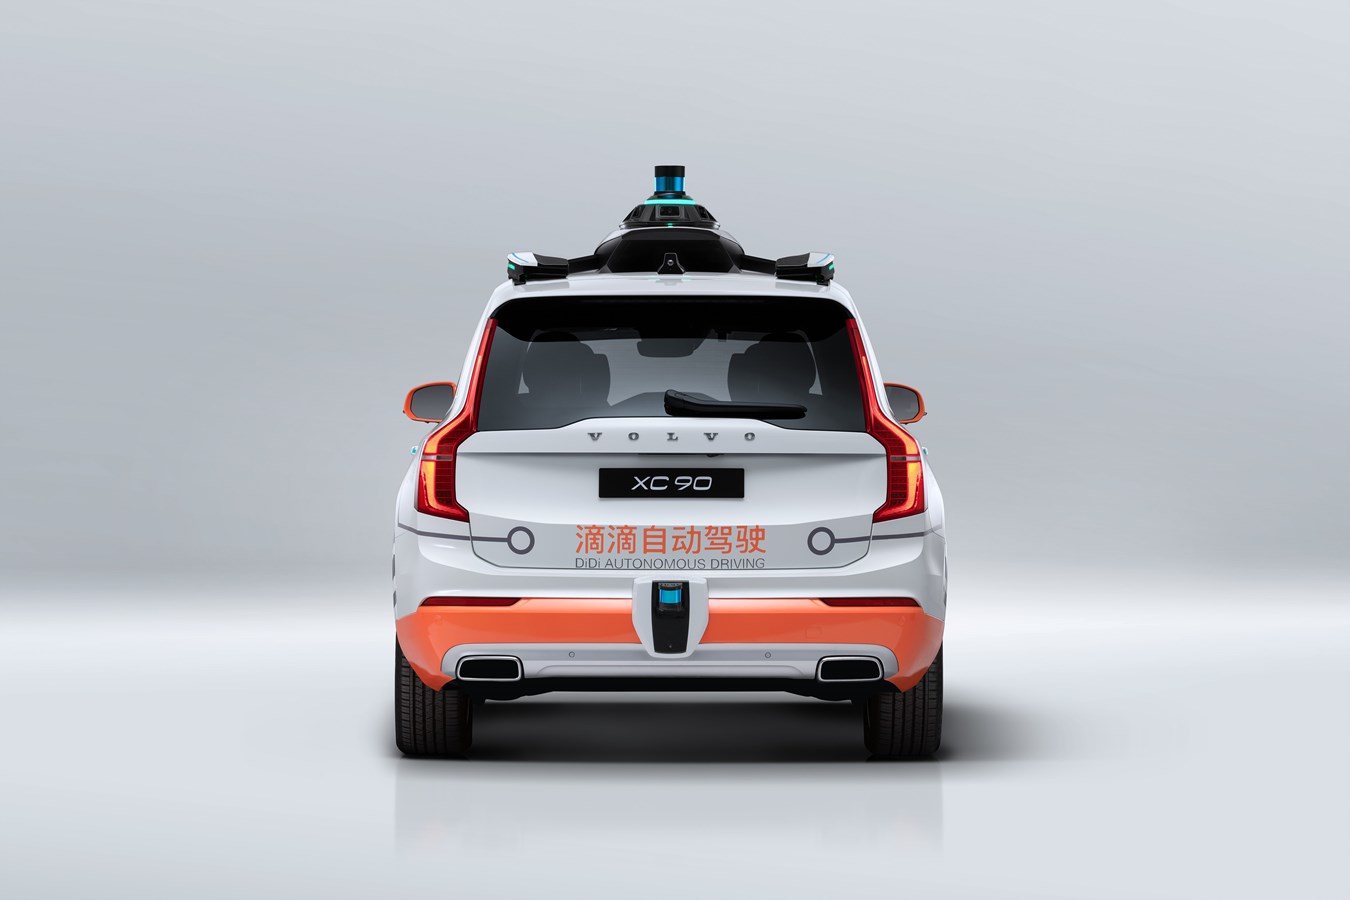 Volvo Cars kooperiert mit Mobilitäts-Technologieplattform DiDi beim autonomen Fahren